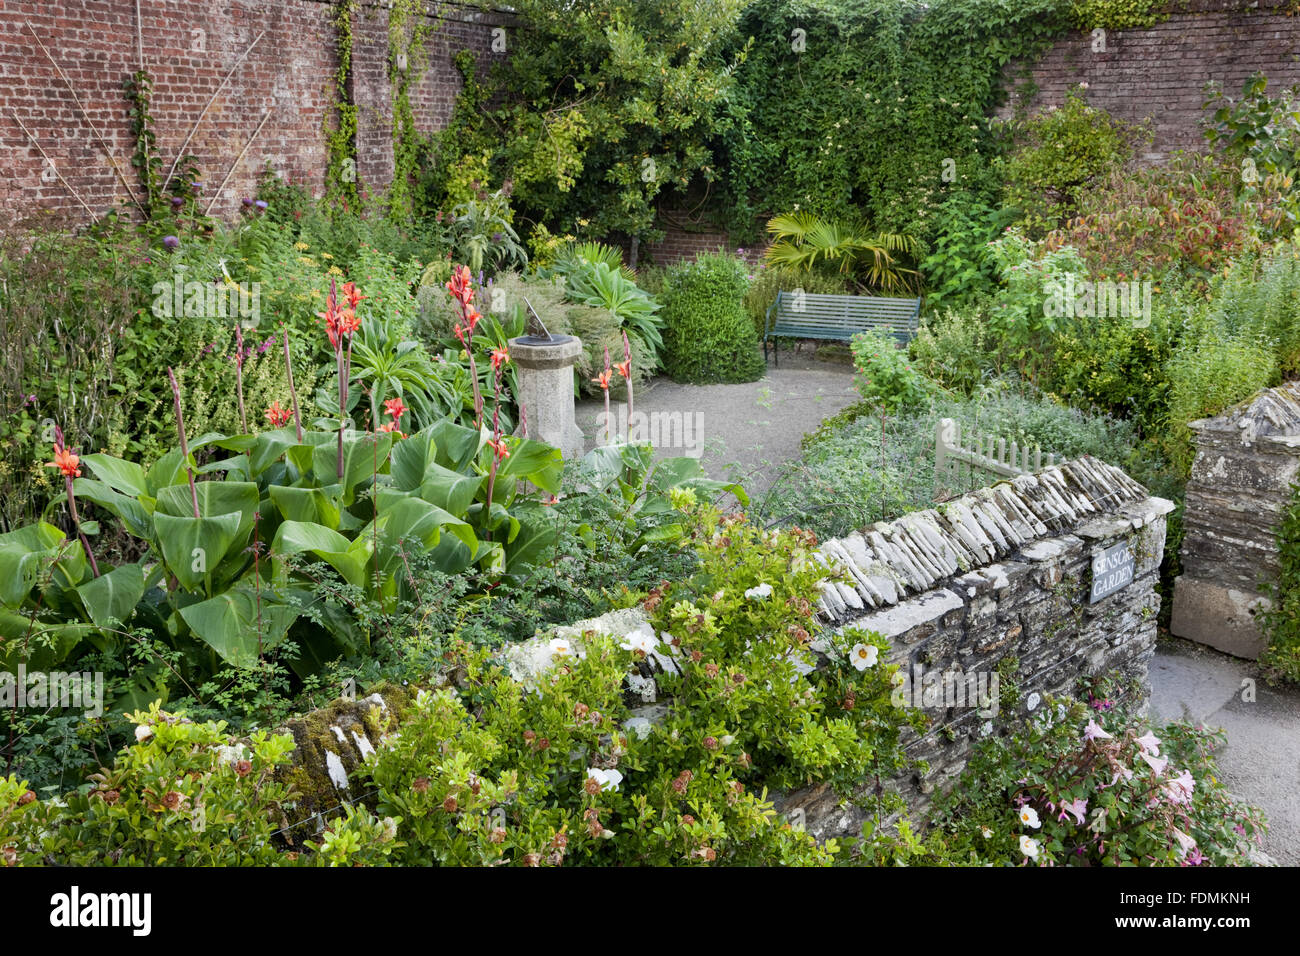 Sensory Garden at Trelissick Garden, Cornwall. Stock Photo